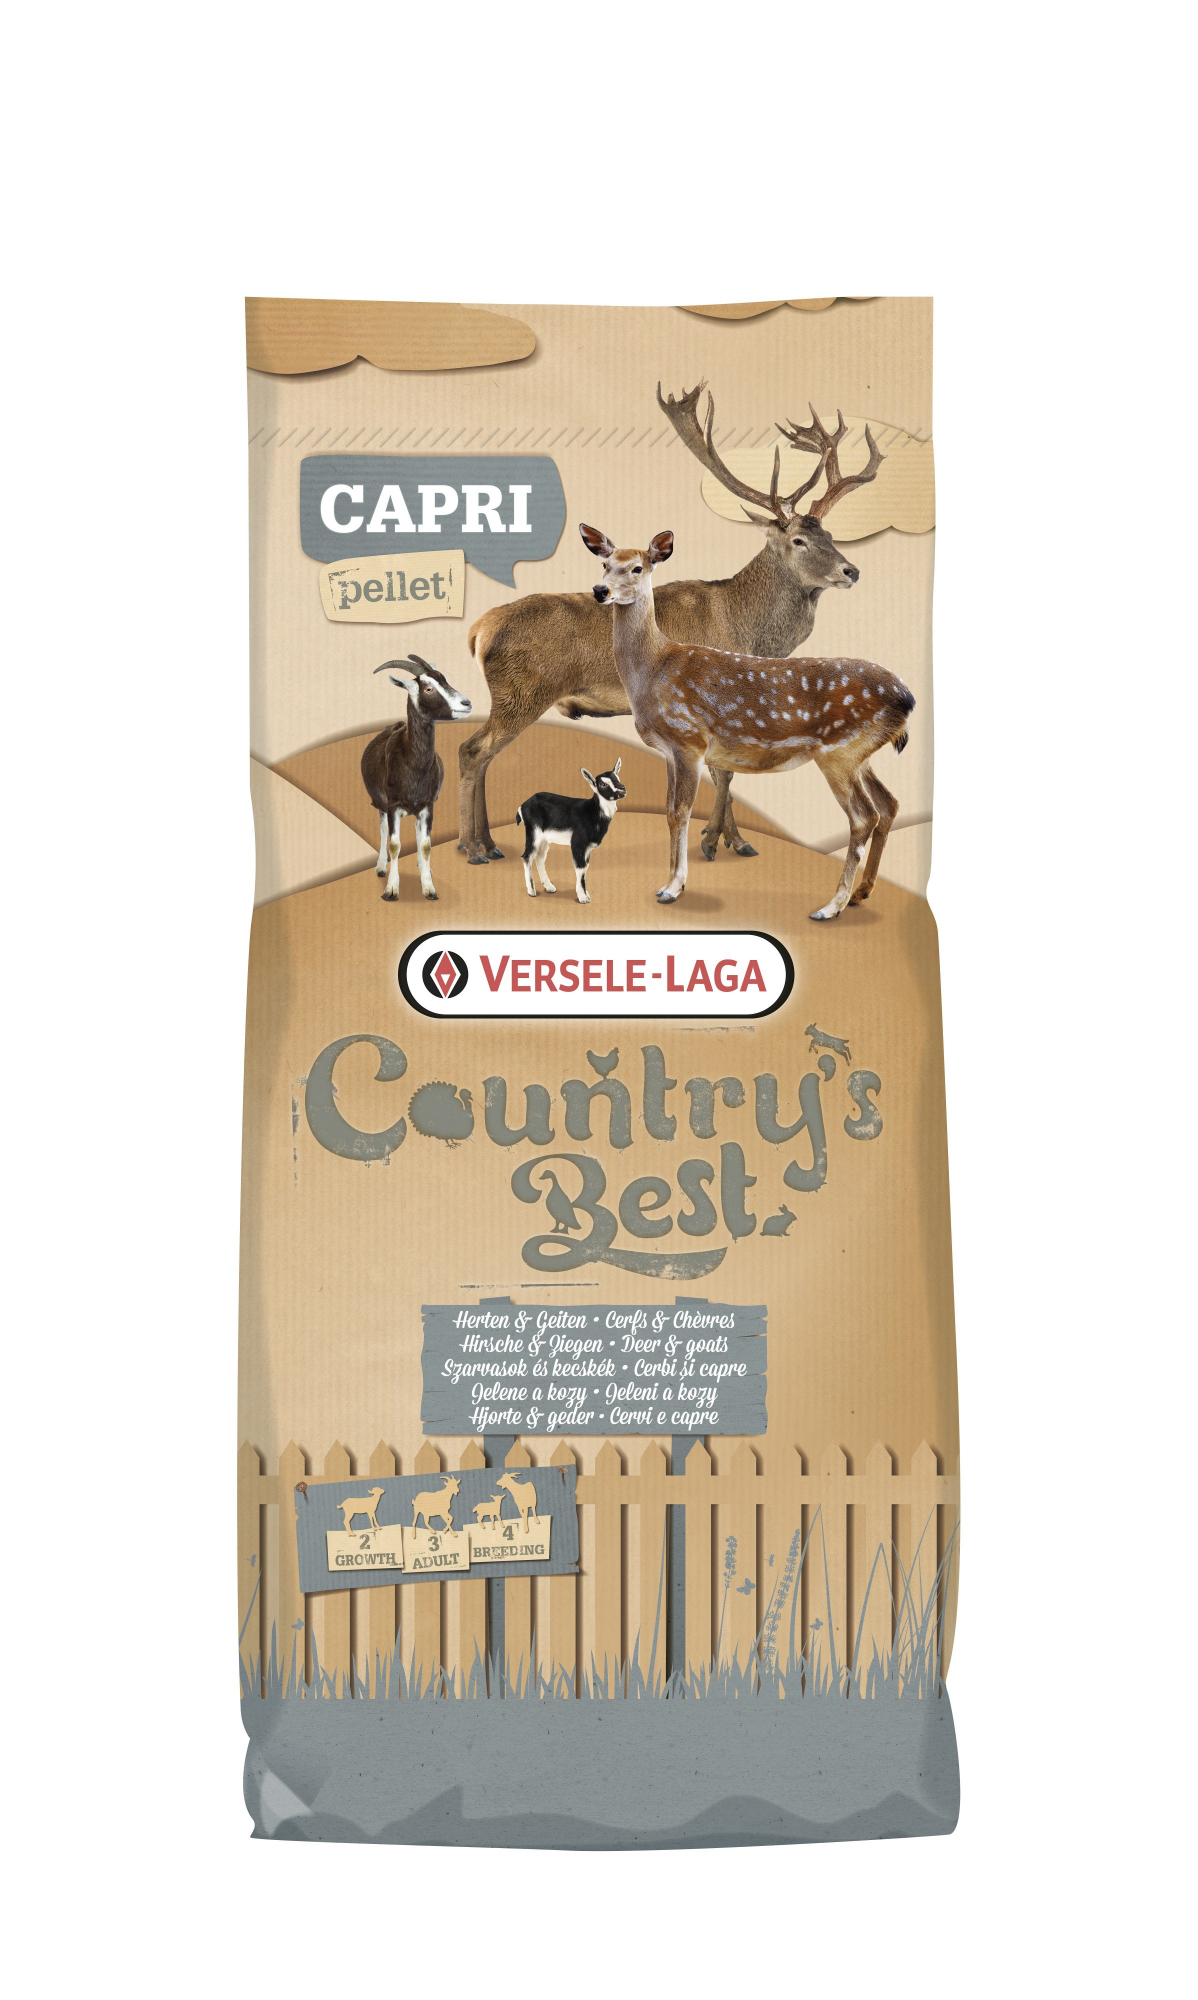 Caprina 3&4 Pellet Country's Best Aliment pour cervidés